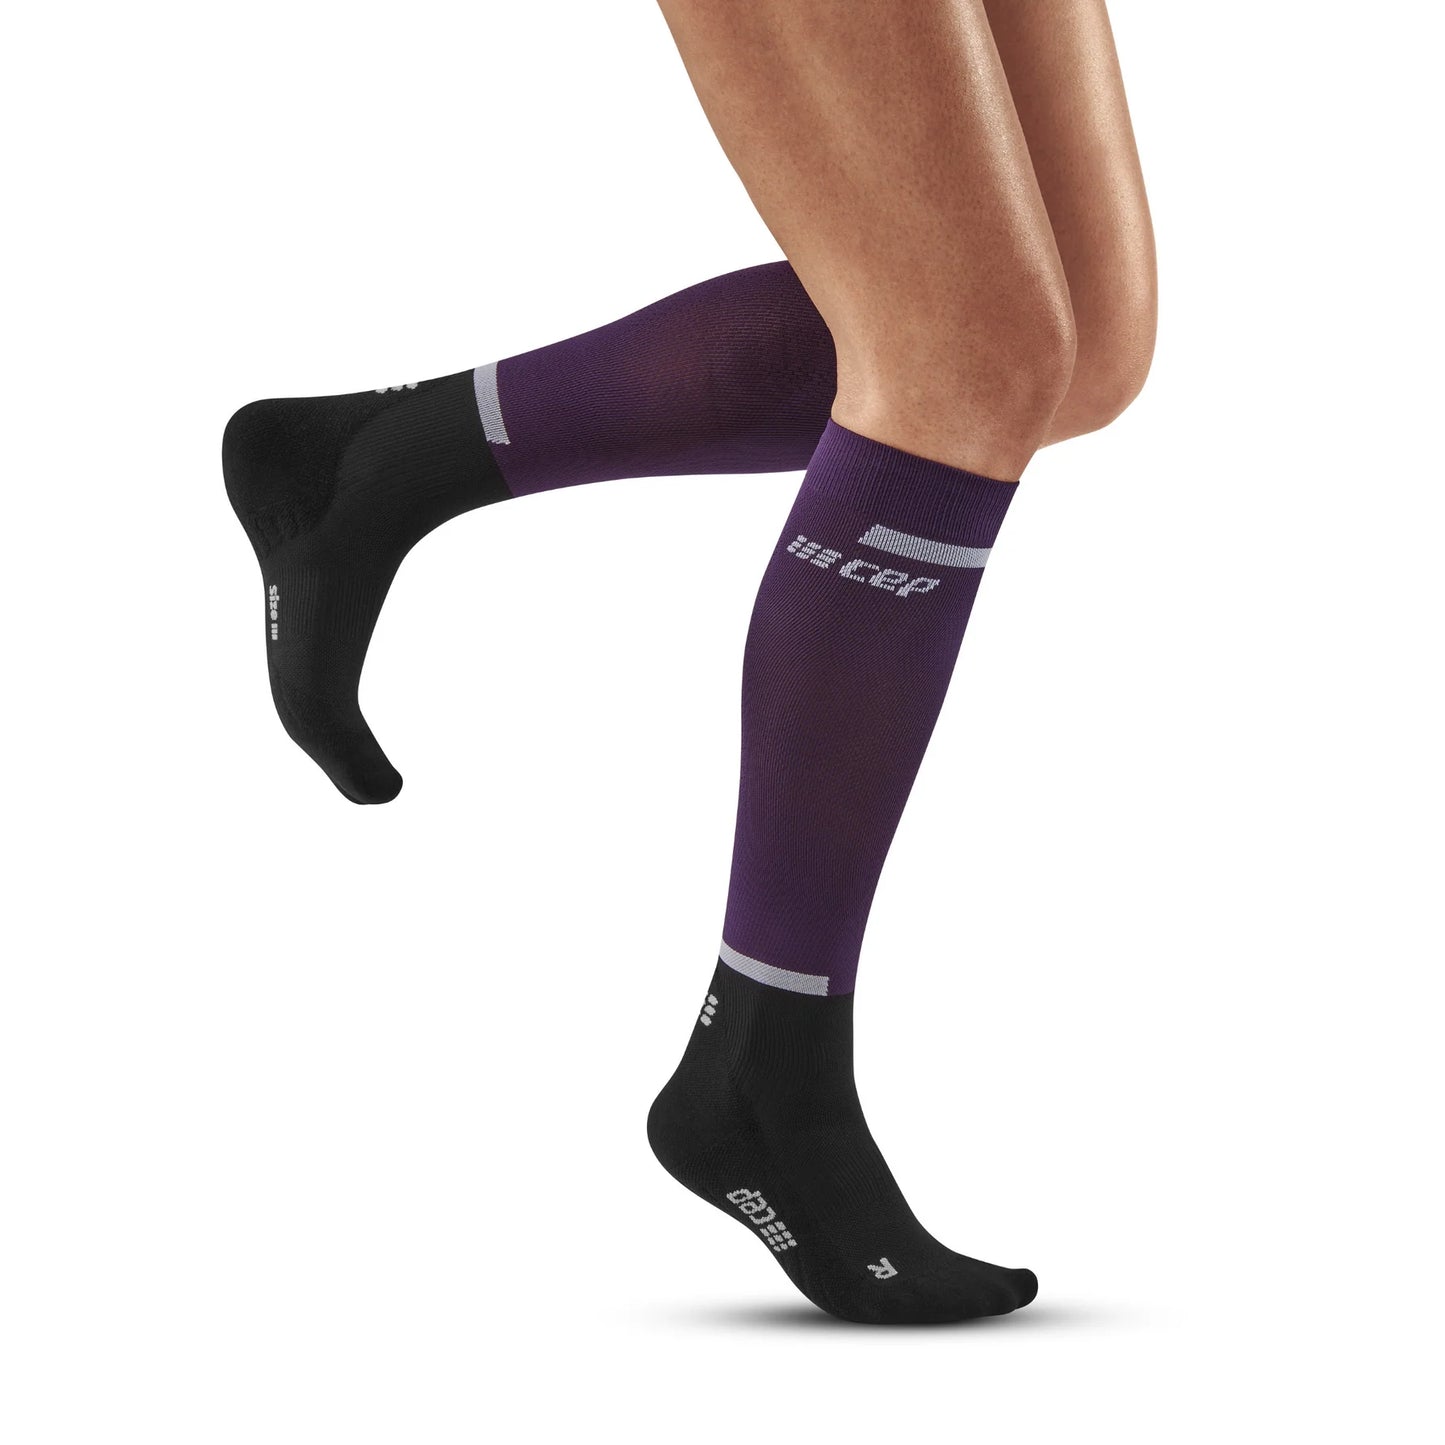 The Run Compression Socks 4.0 Women's